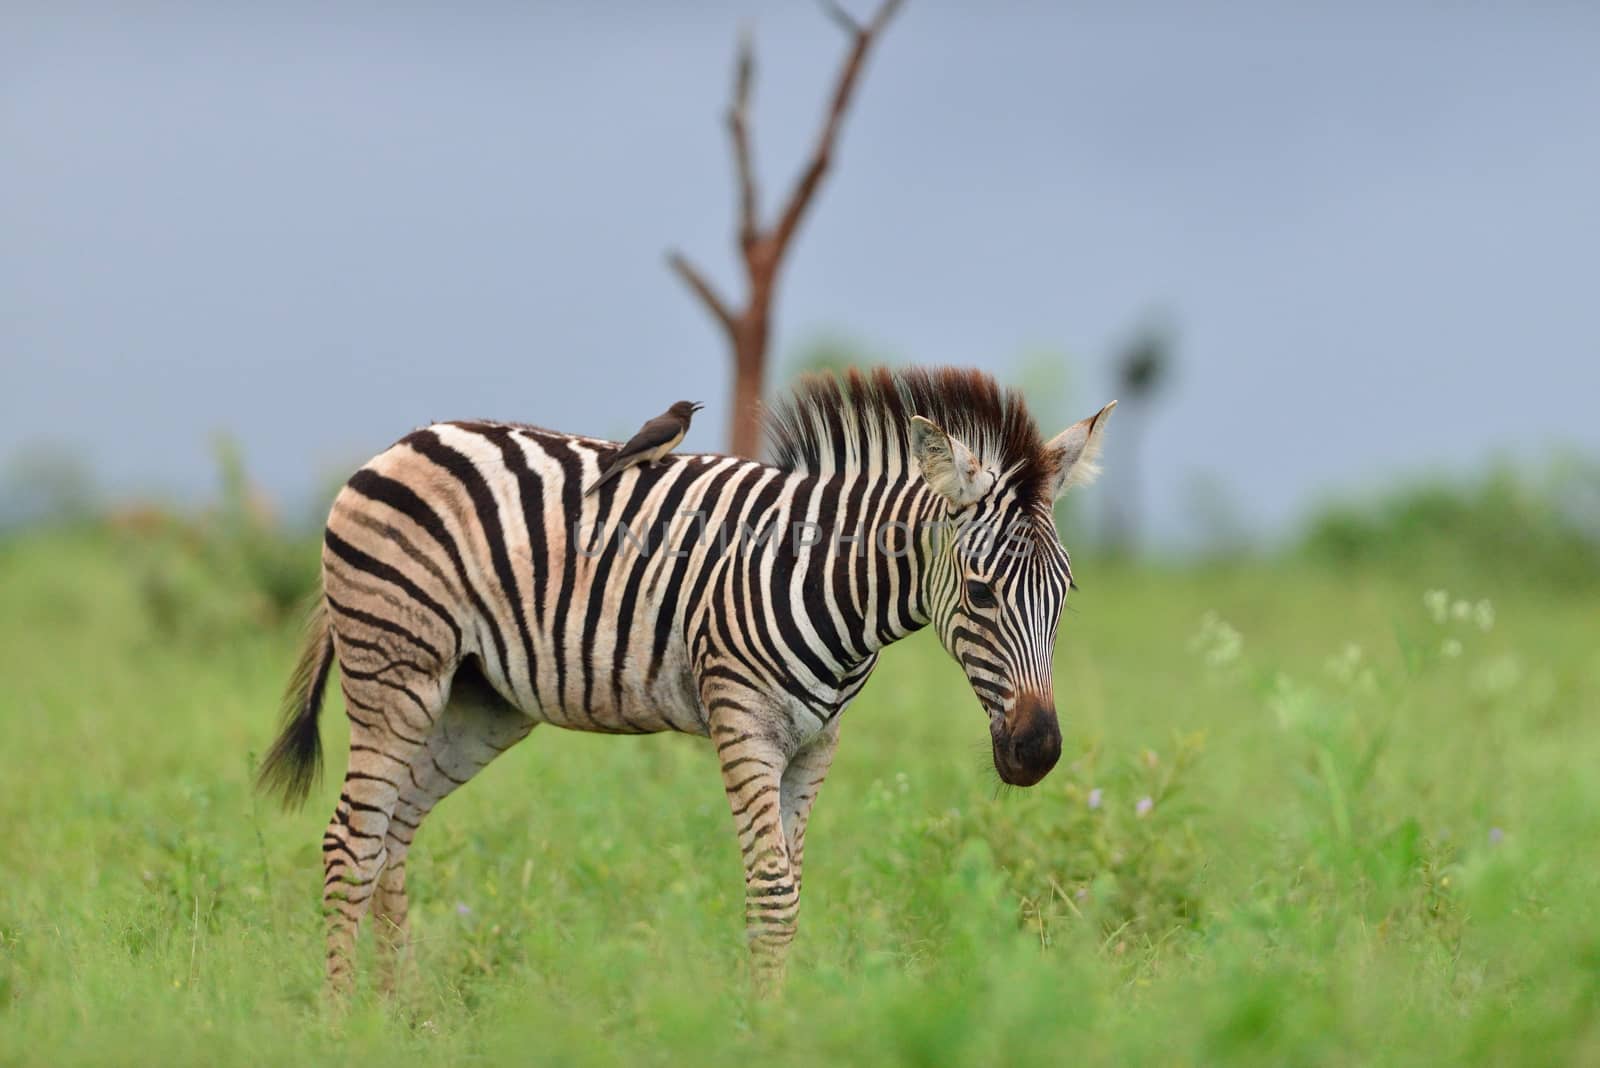 Zebra foal in the wilderness by ozkanzozmen